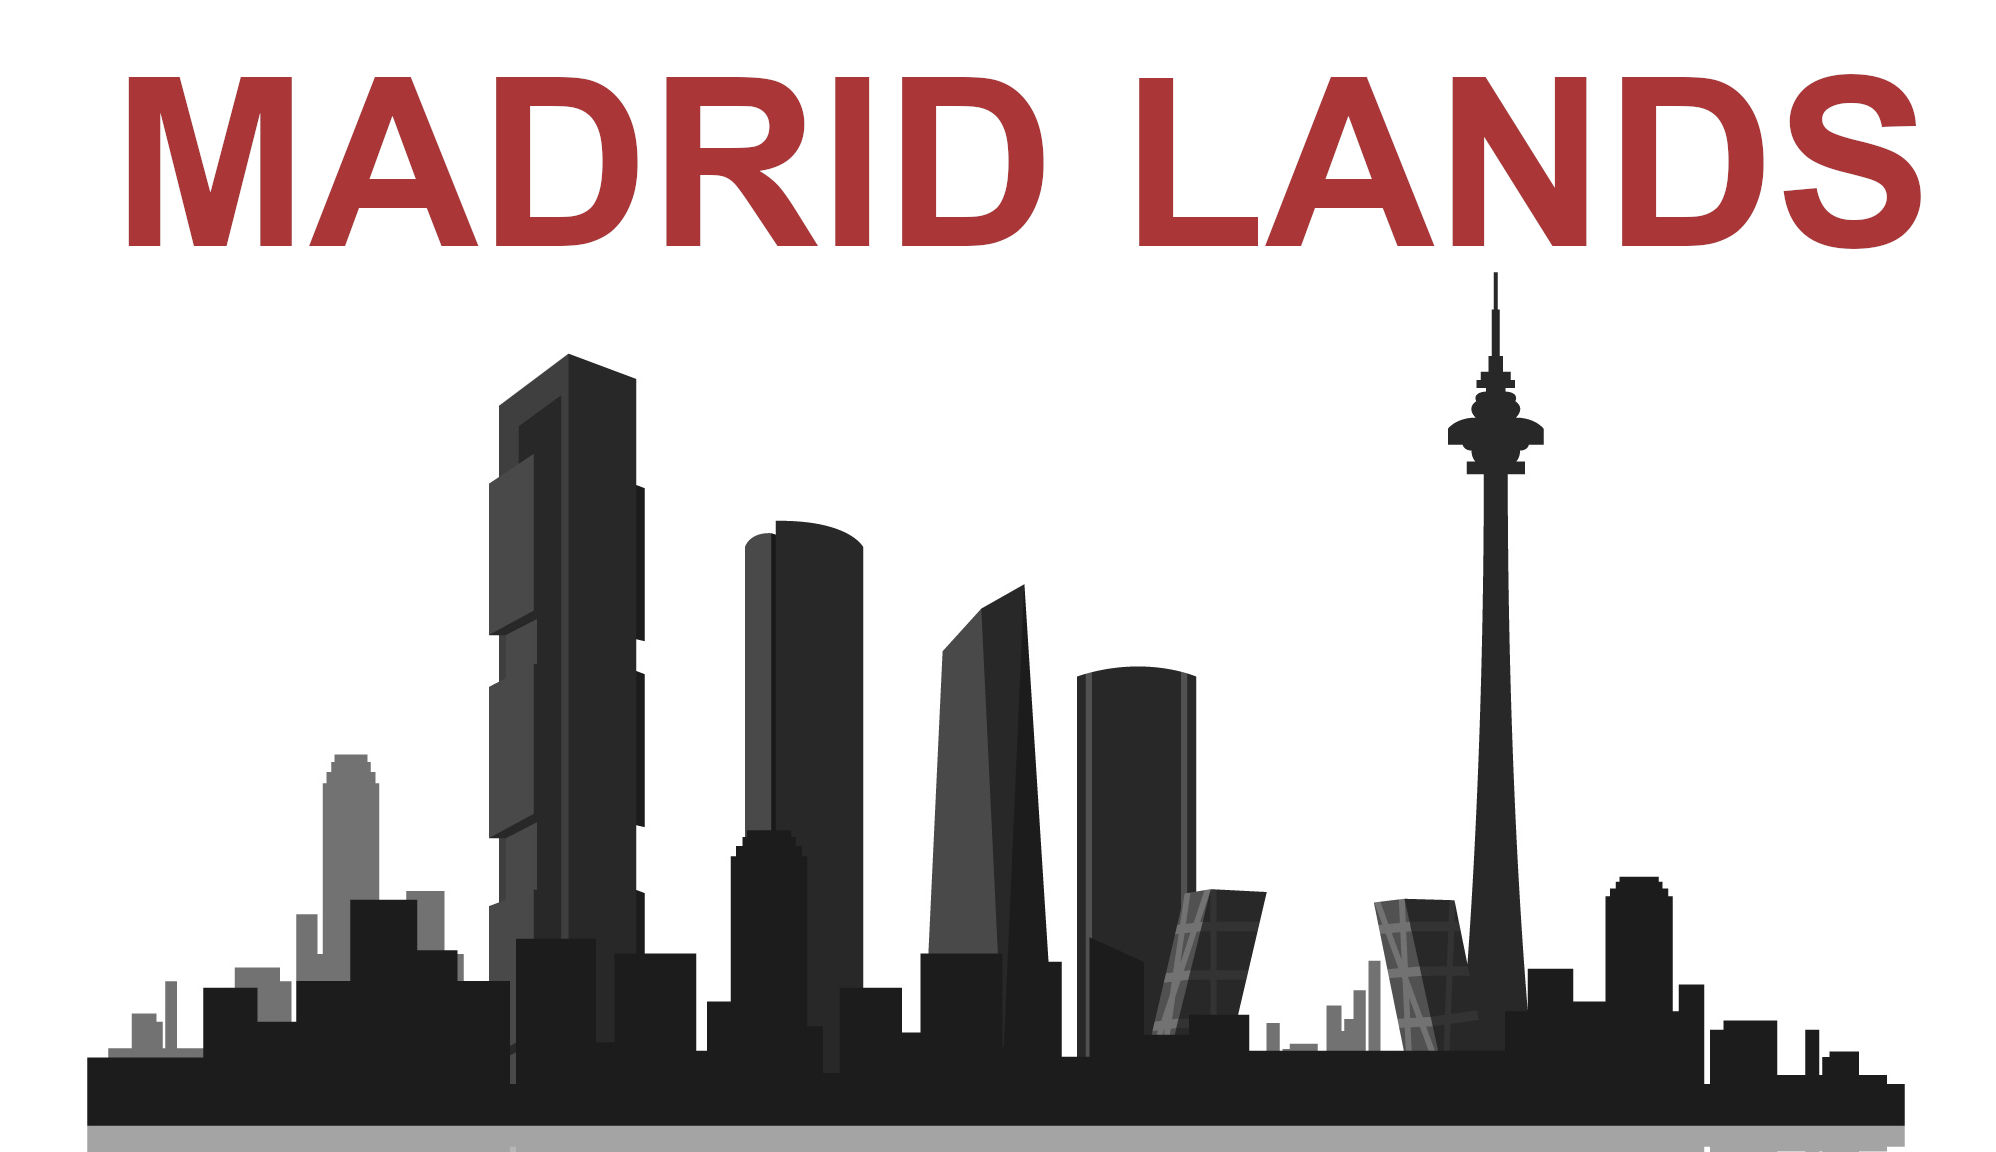 MADRID LANDS